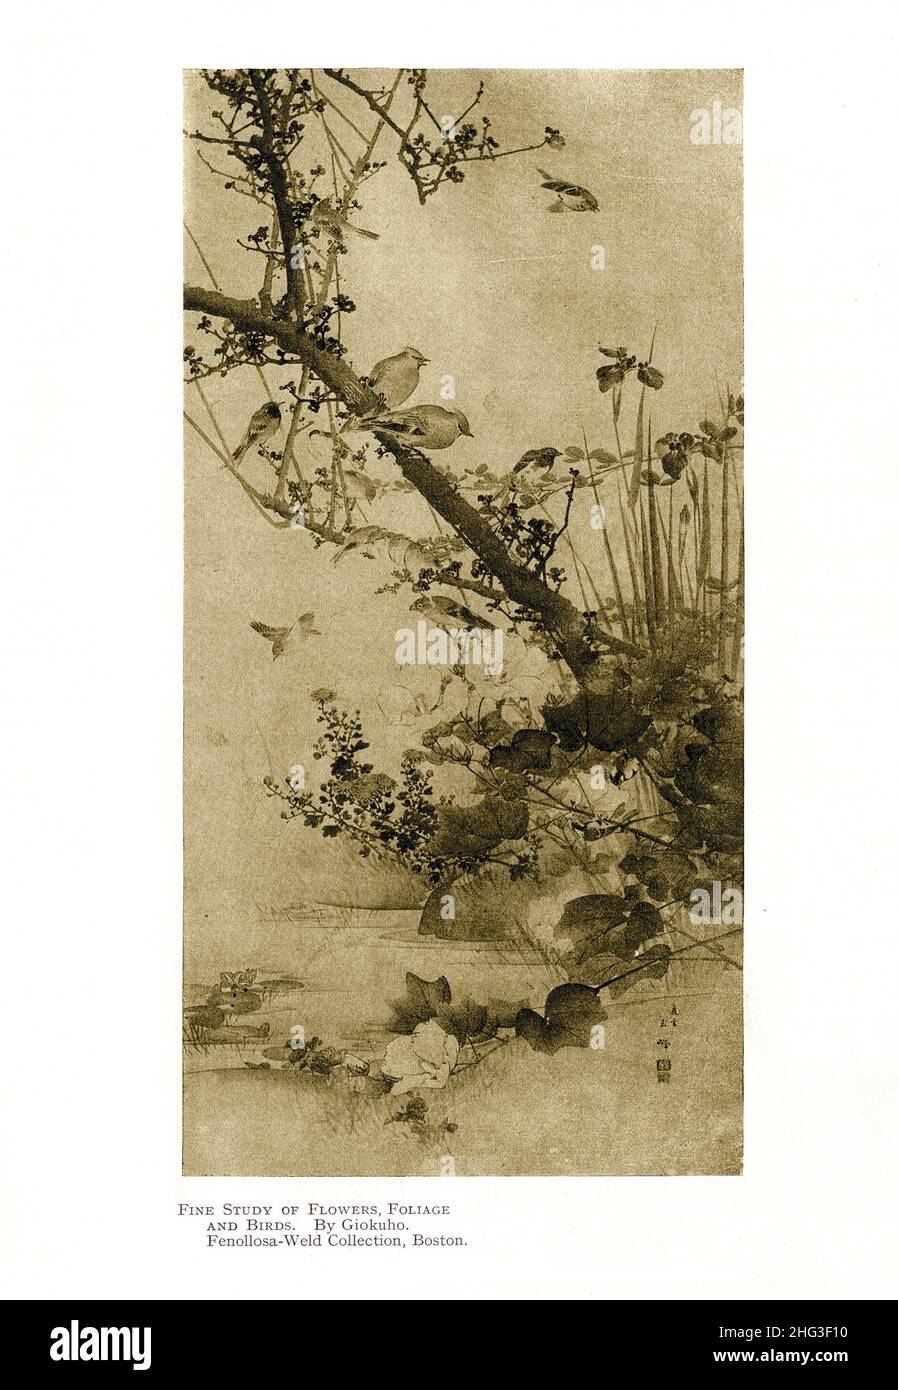 Japanische Malerei des 19th. Jahrhunderts: Feine Studie von Blumen, Laub und Vögeln. Von Giokuho. Reproduktion der Buchdarstellung von 1912 Stockfoto